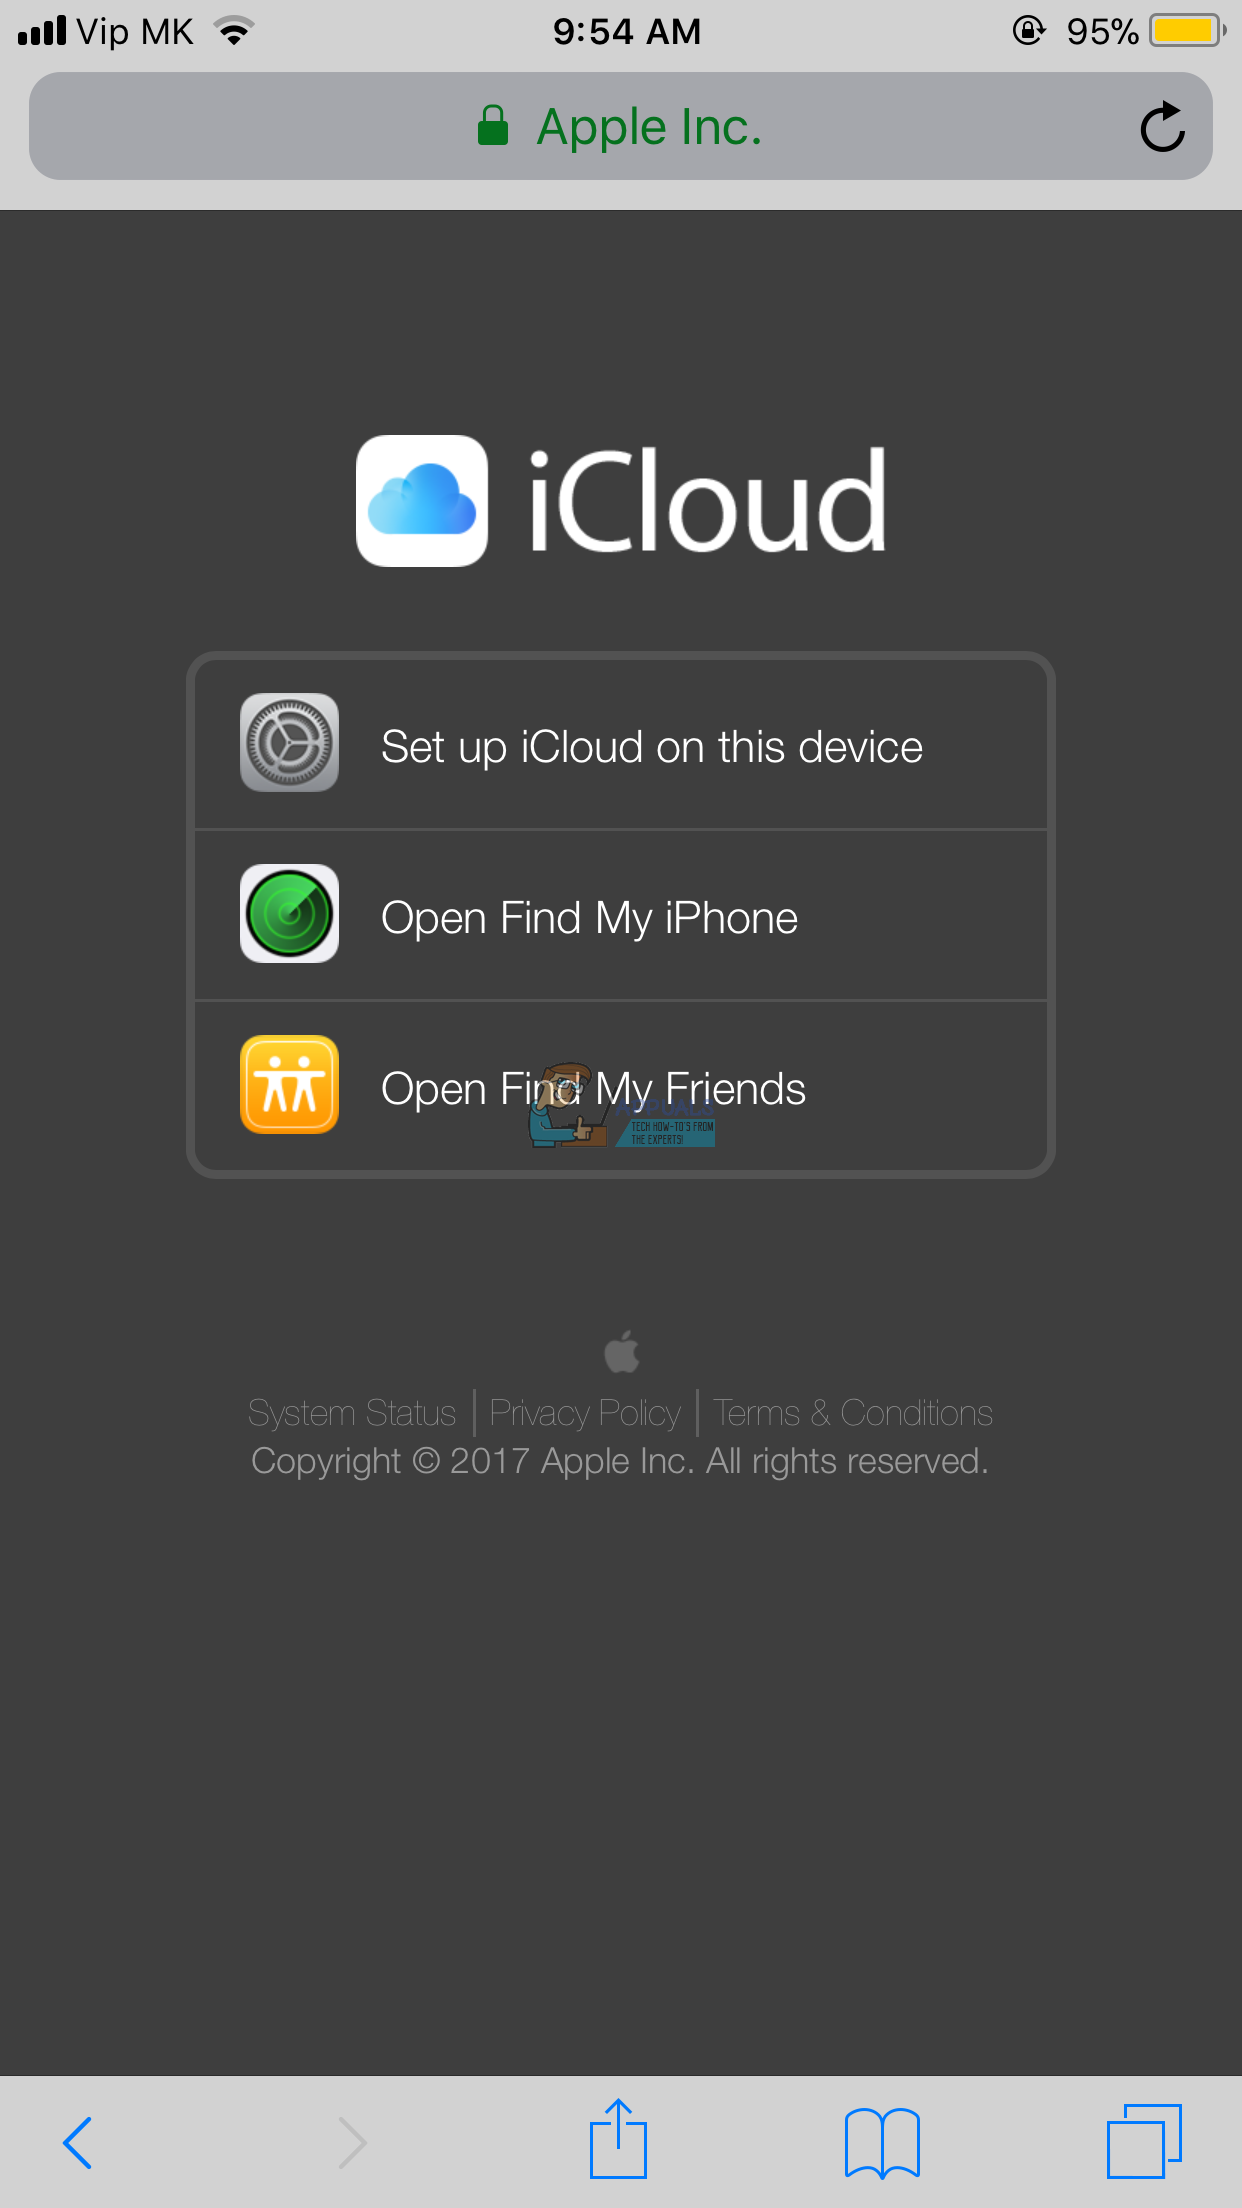 Cómo iniciar sesión en iCloud.com usando su iPhone o iPad